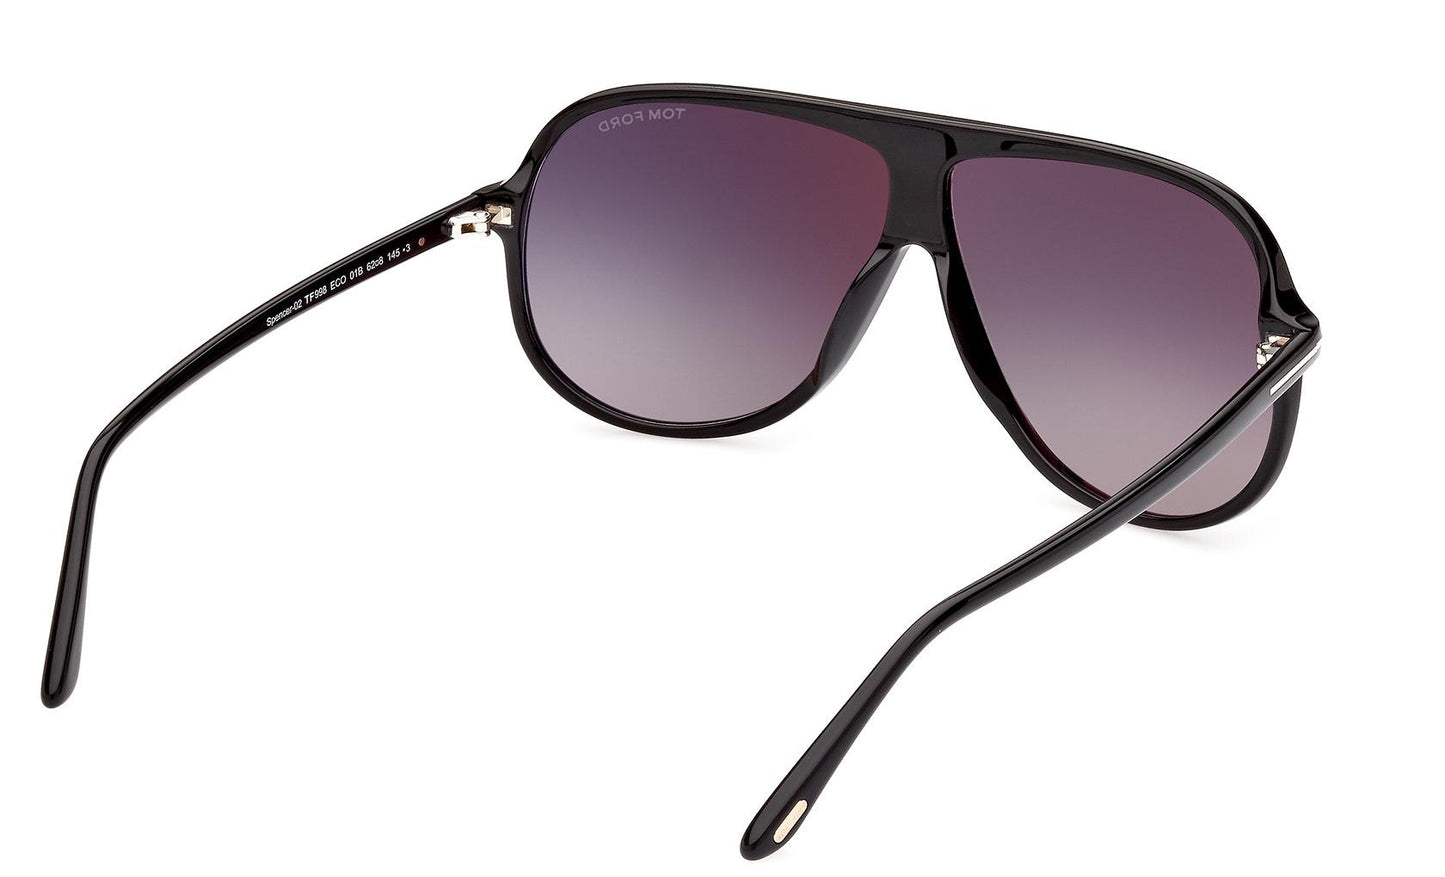 Tom Ford Spencer-02 Sunglasses FT0998 01B